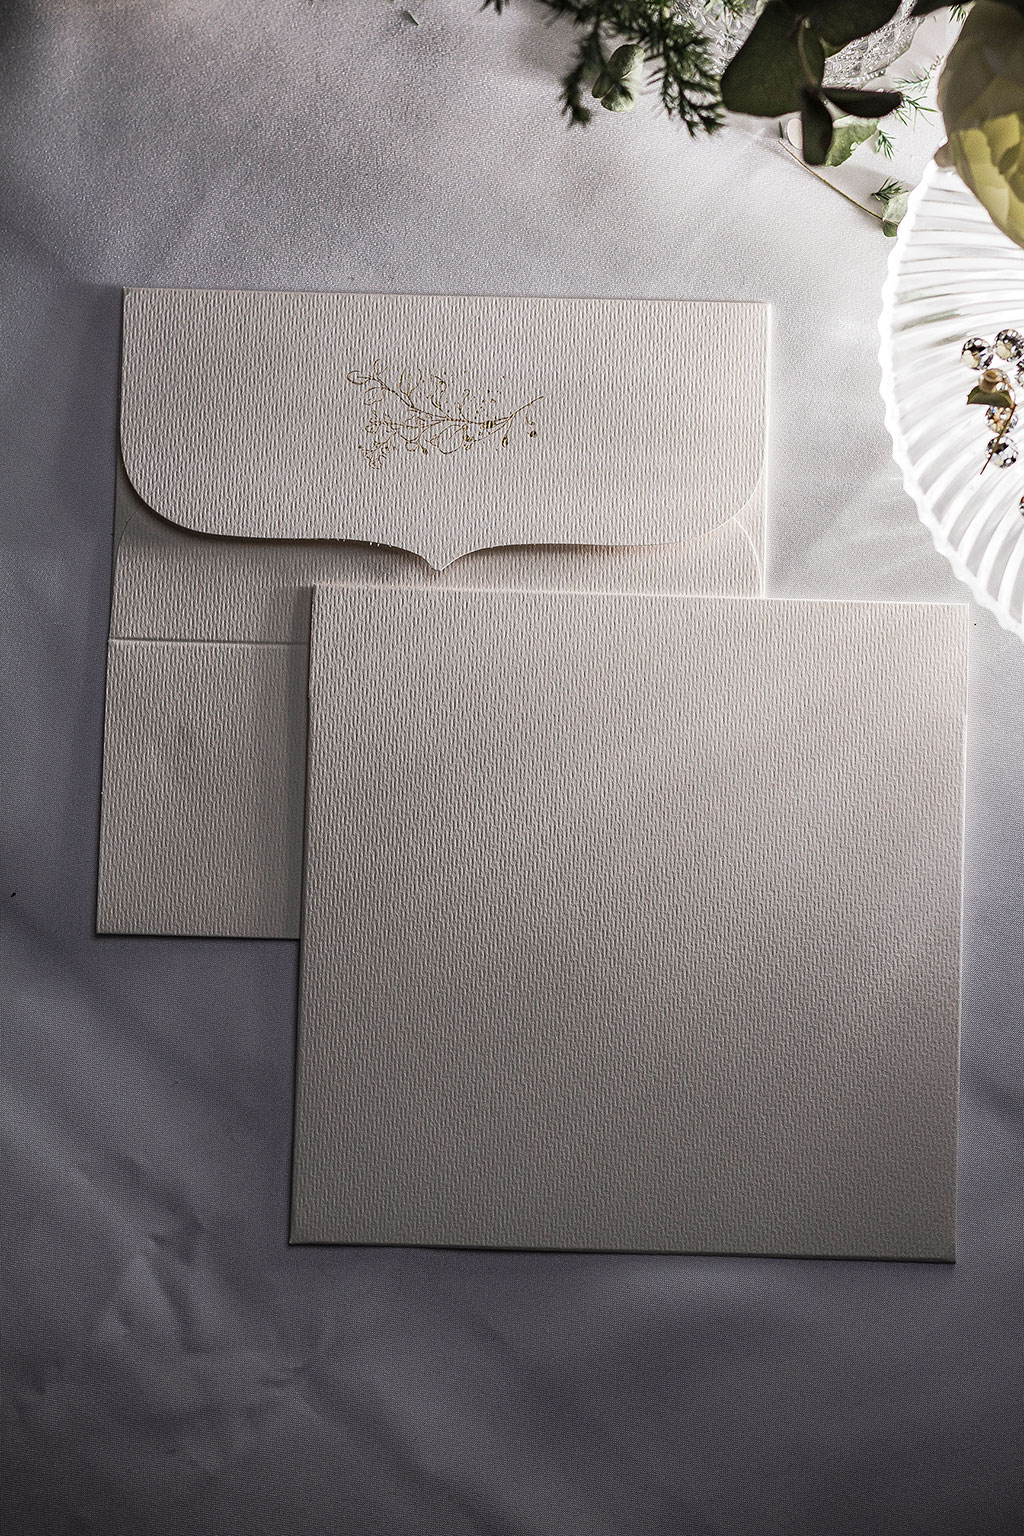 arany virágos natúrfehér boríték, elegáns ívelt formájú négyzetes alakban, struktúrált felületű prémium kartonból, rendkívül kedvező áron